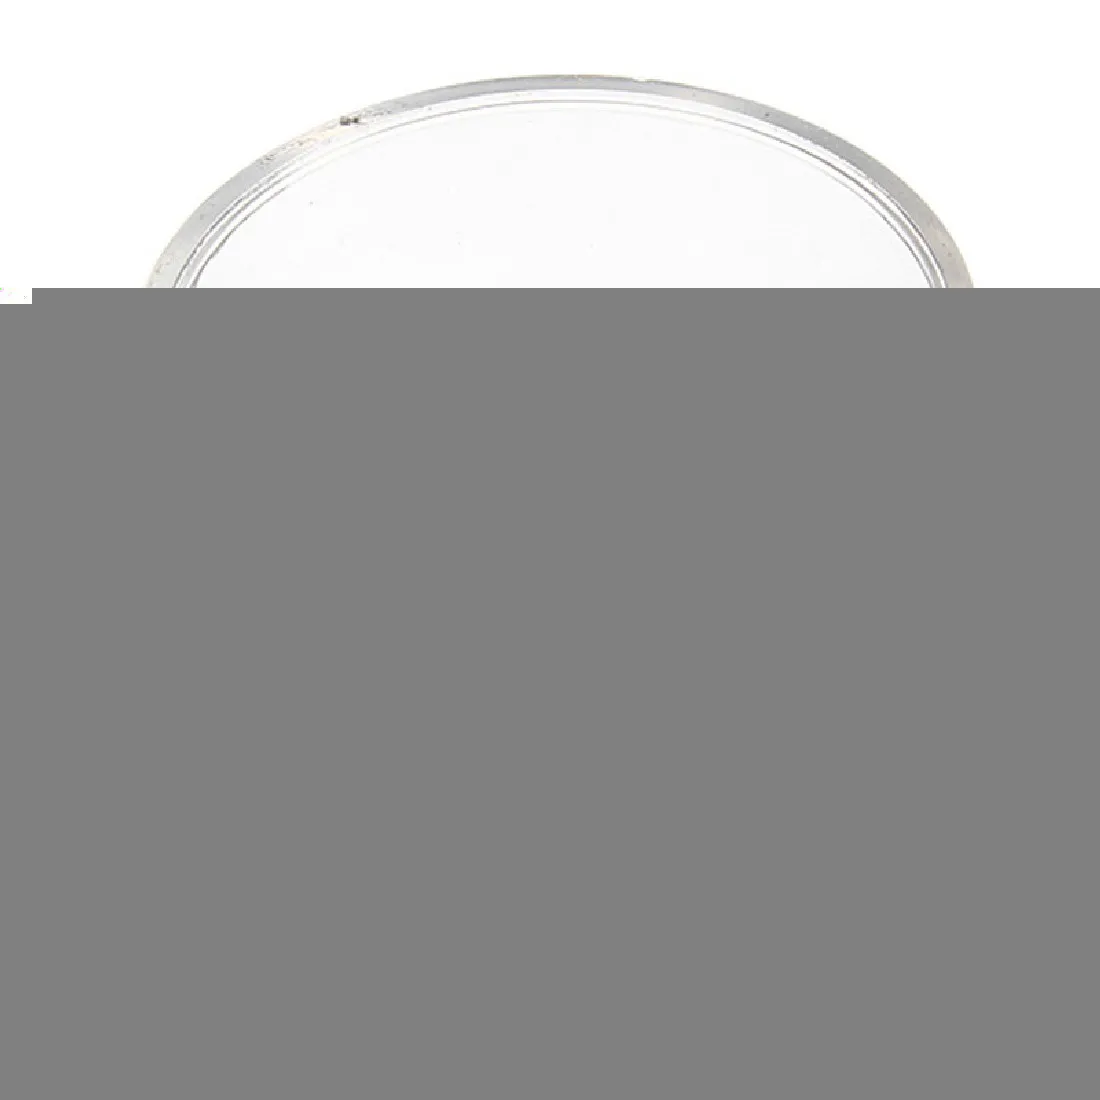 Специально Arrvial портативный 15X монокуляр, увеличительное стекло лупа объектива Ювелирный инструмент лупа для глаз инструмент для ремонта часов